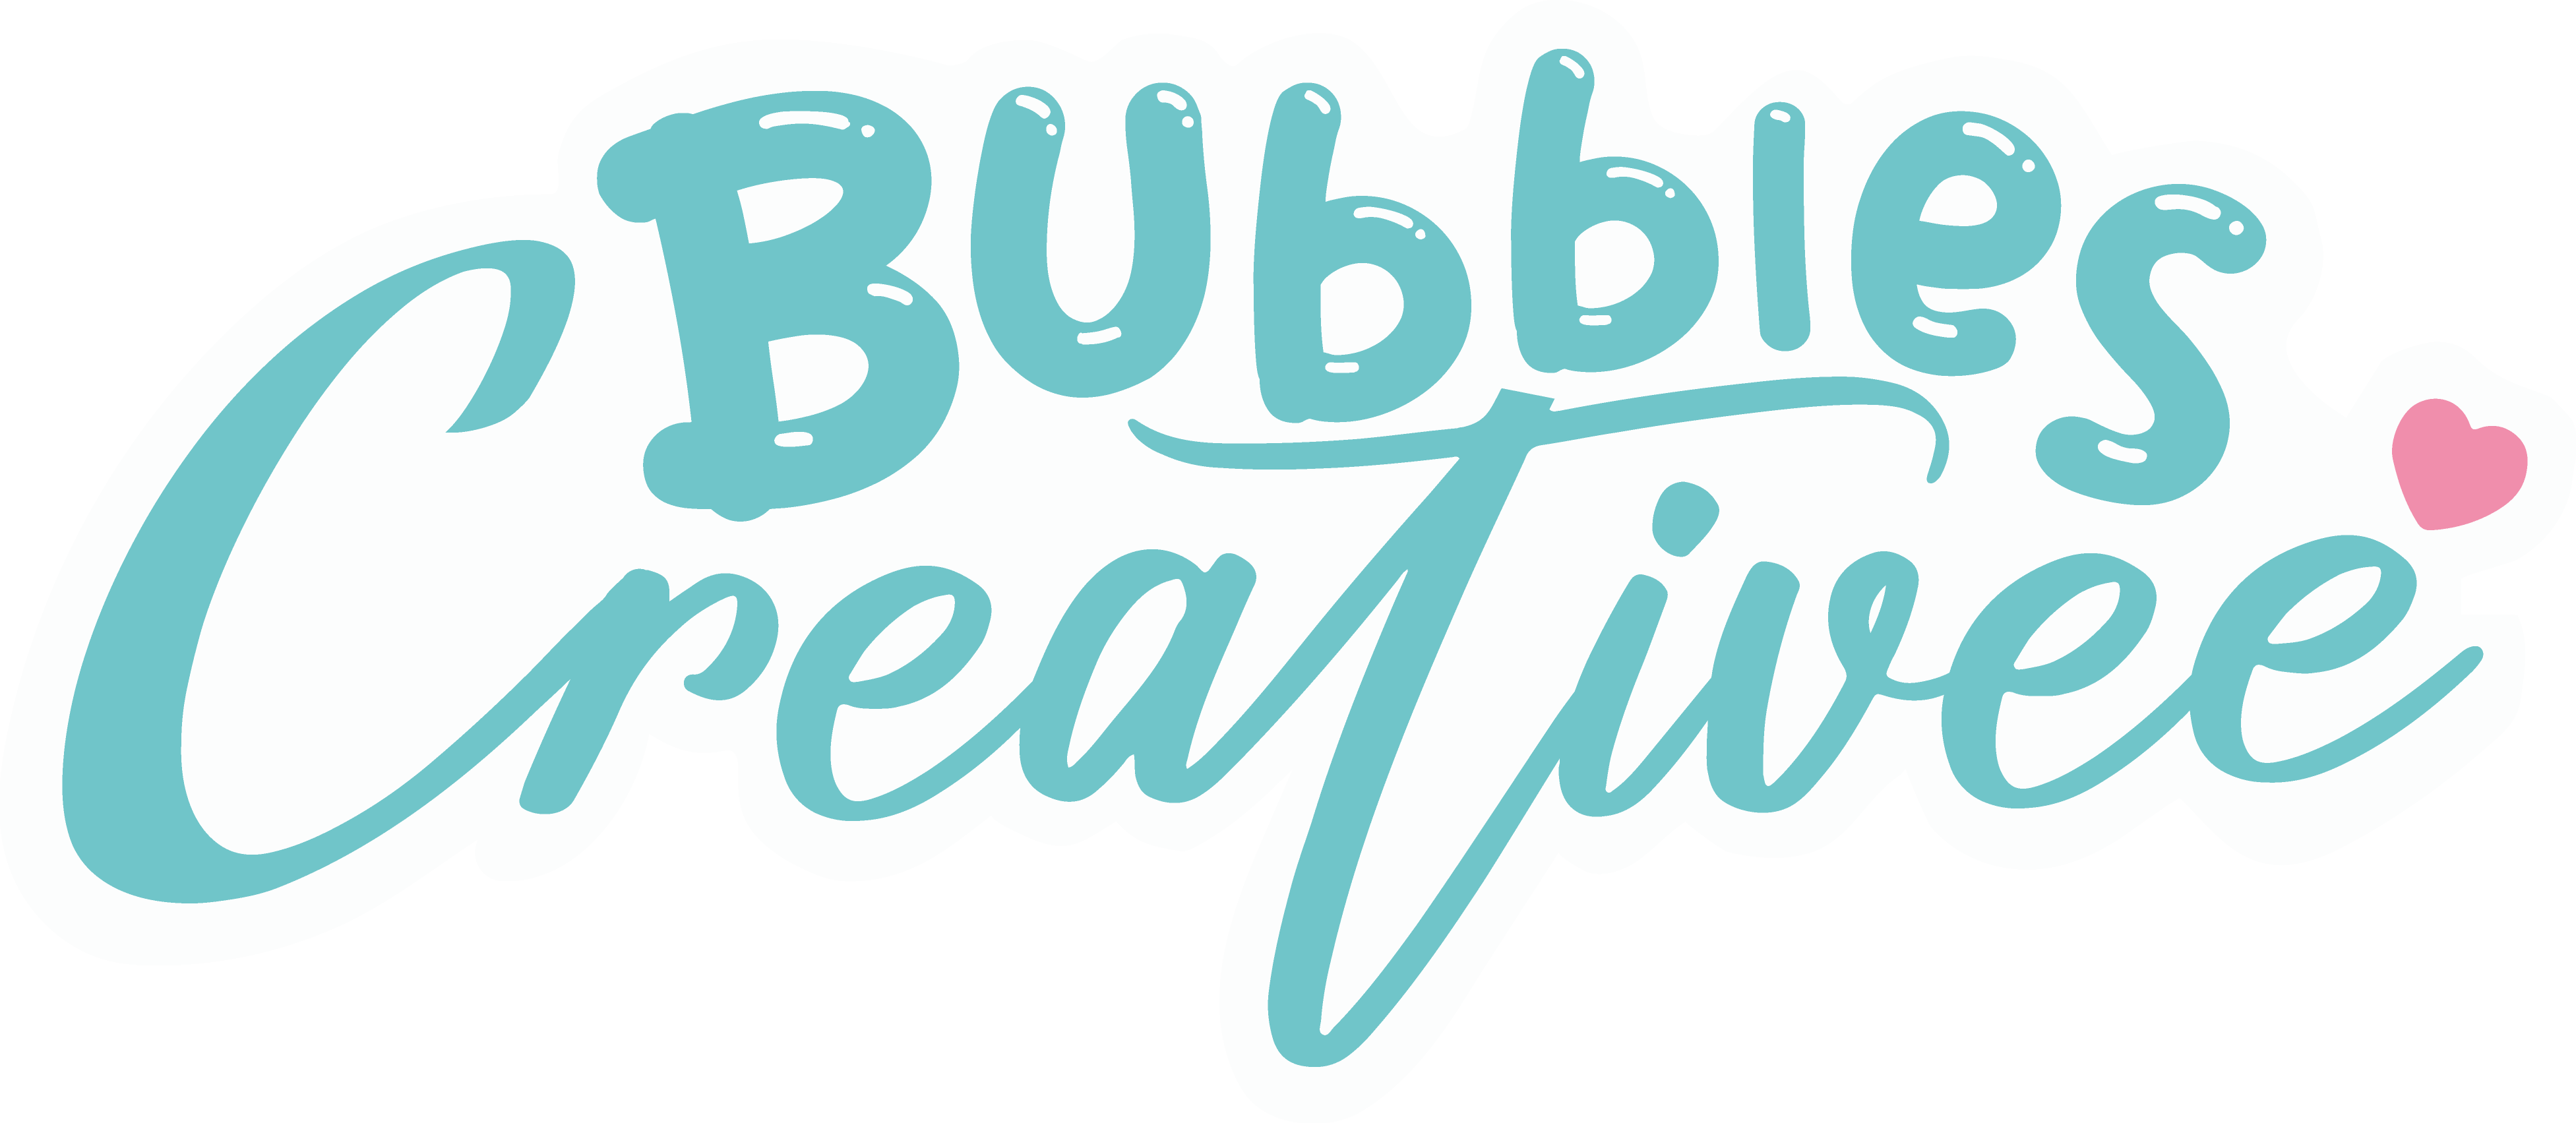 Burbujas – Bubbles Creativee